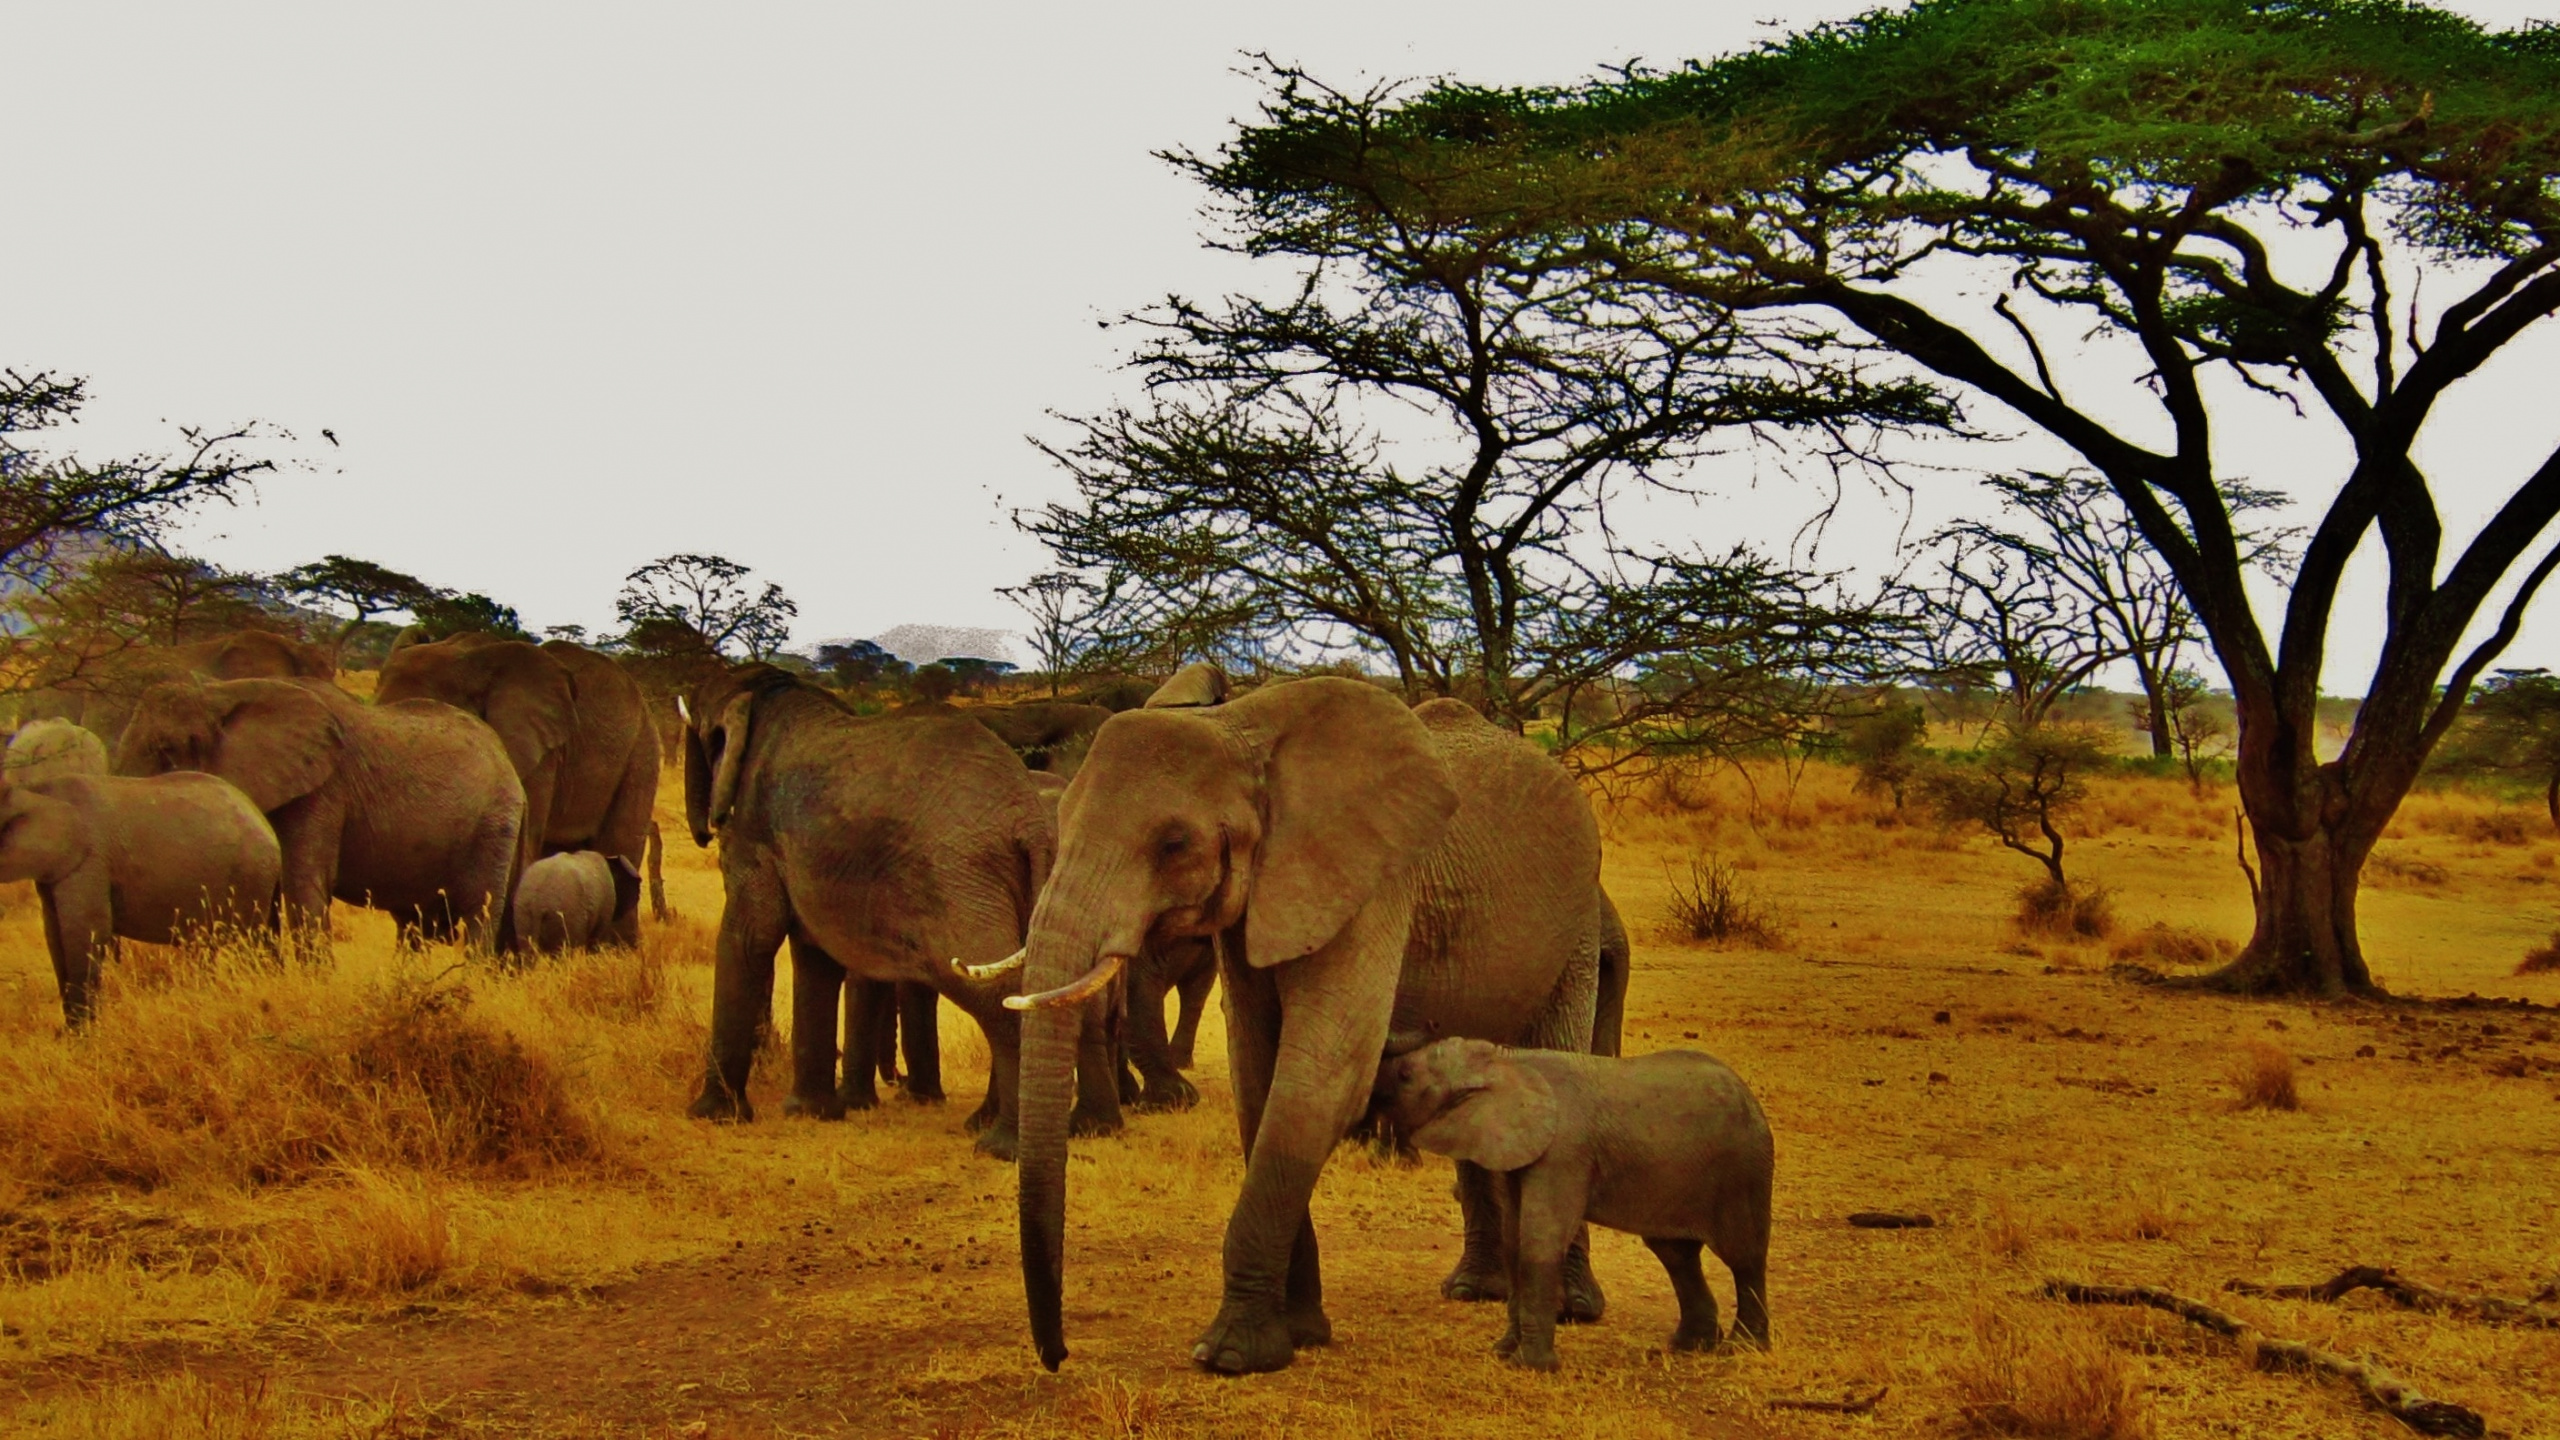 Safari, 野生动物, 陆地动物, 大象和猛犸象, 印度大象 壁纸 2560x1440 允许